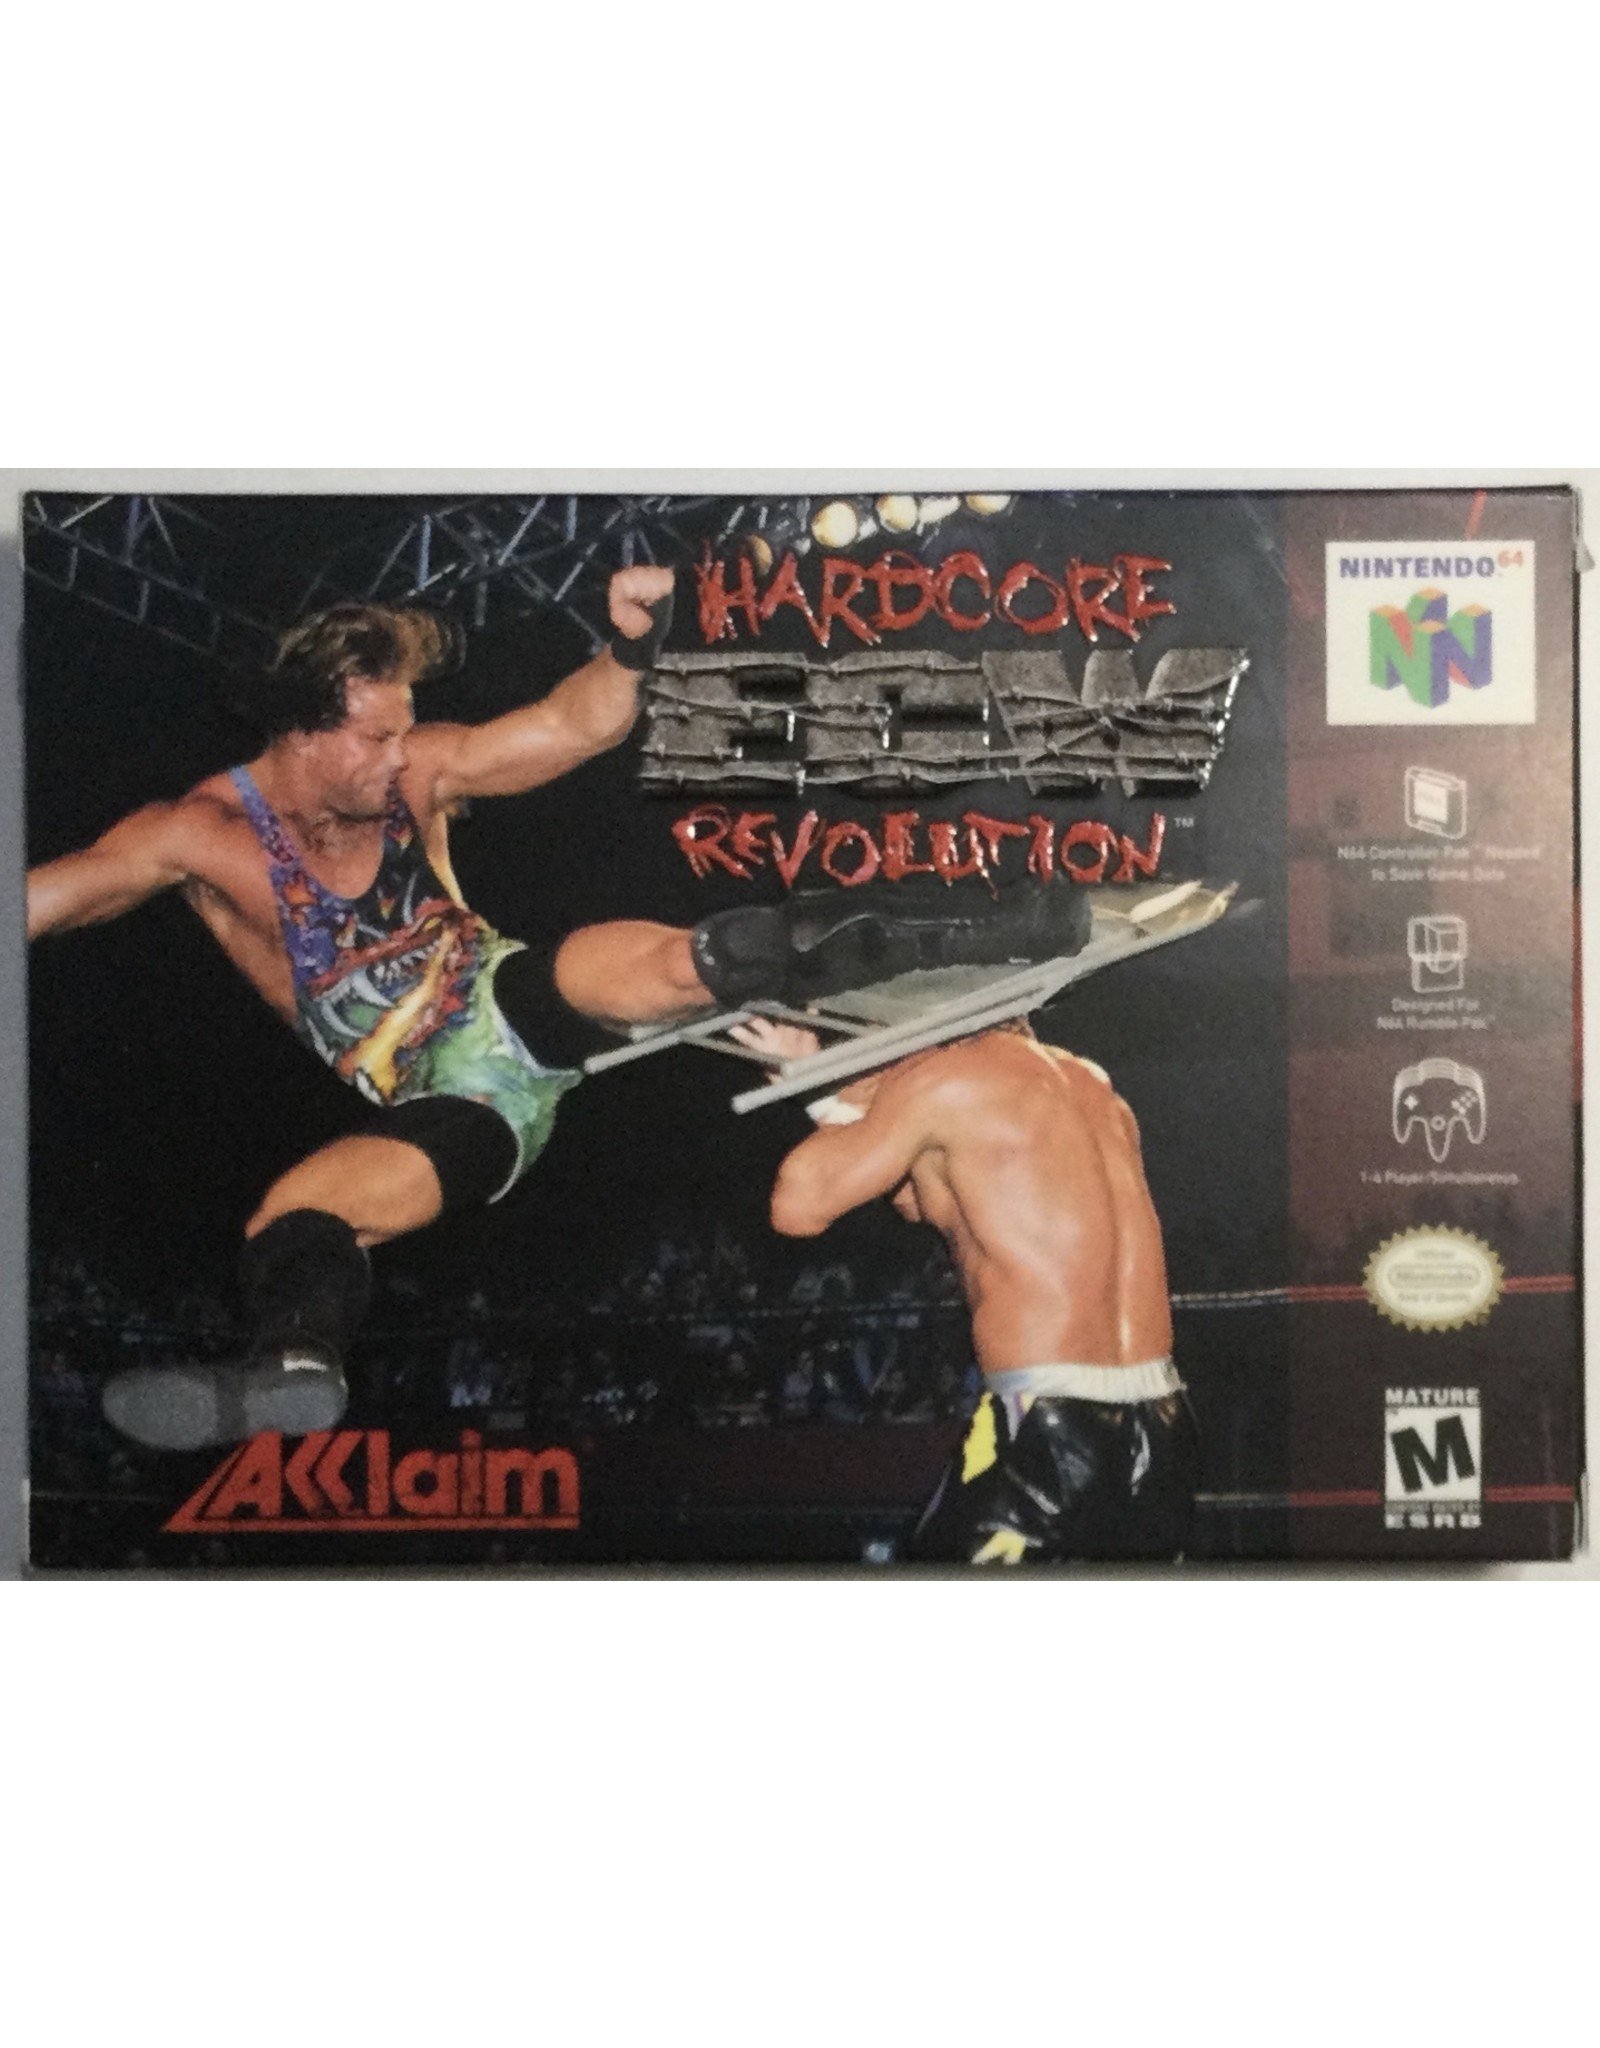 ACCLAIM Hardcore ECW Revolution for Nintendo 64 (N64) - CIB